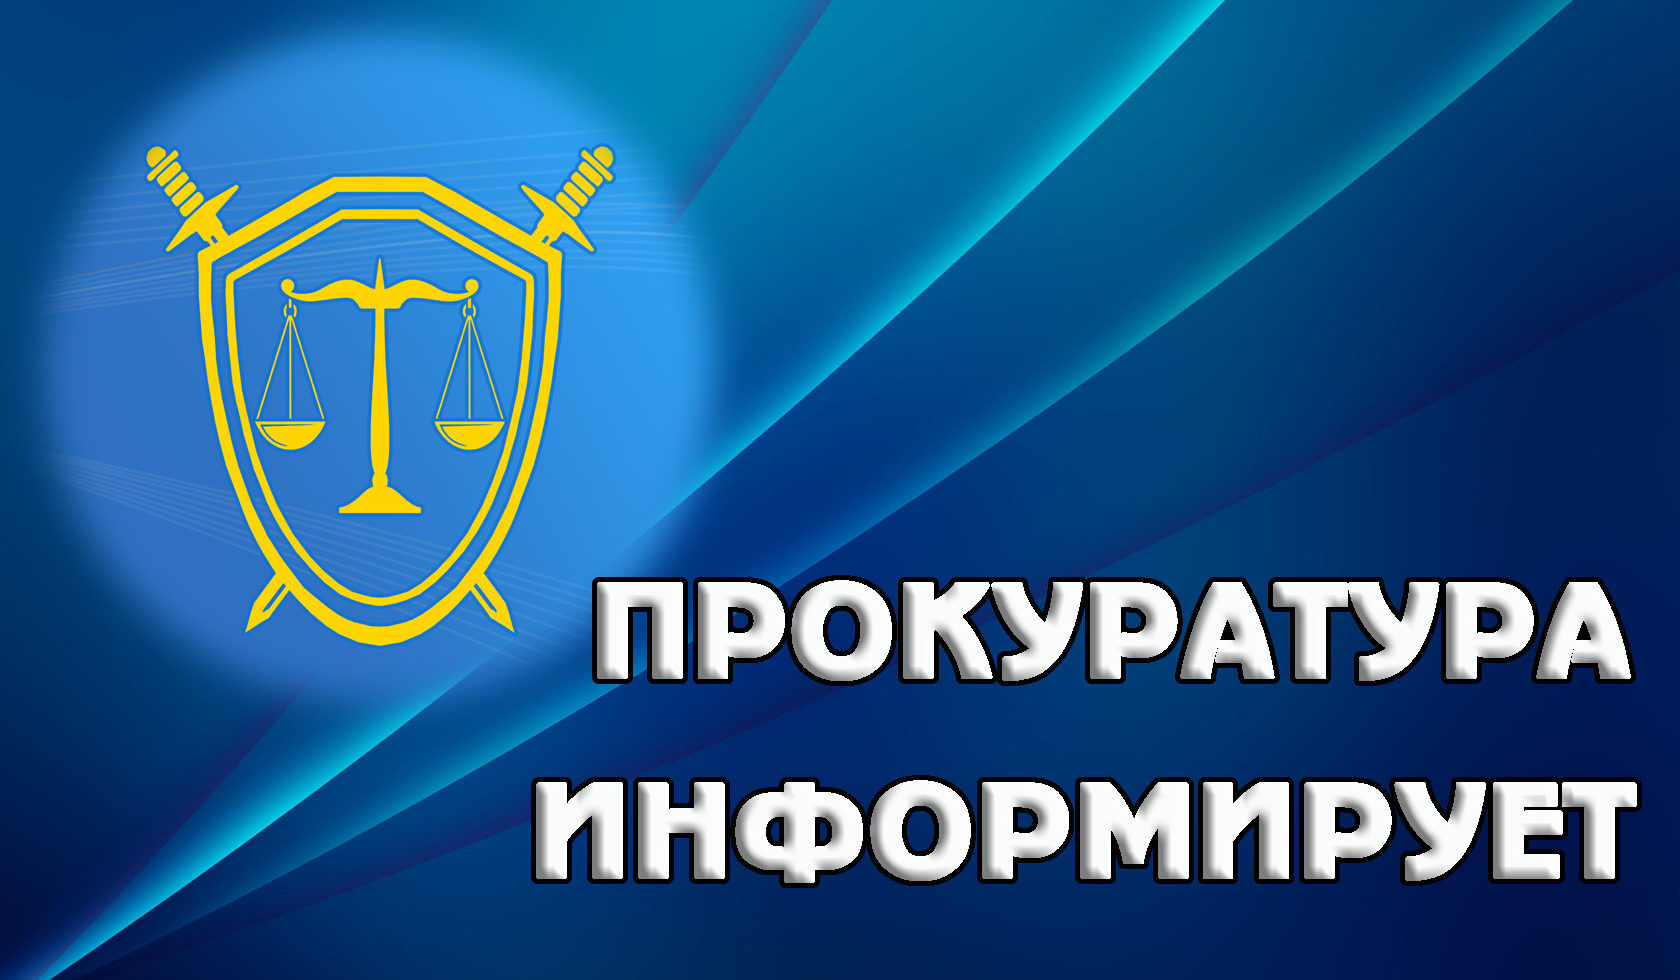 Прокуратура Засвияжского района г. Ульяновска разъясняет вопрос о проведении контрольно-надзорных проверок на основании анонимных обращений.